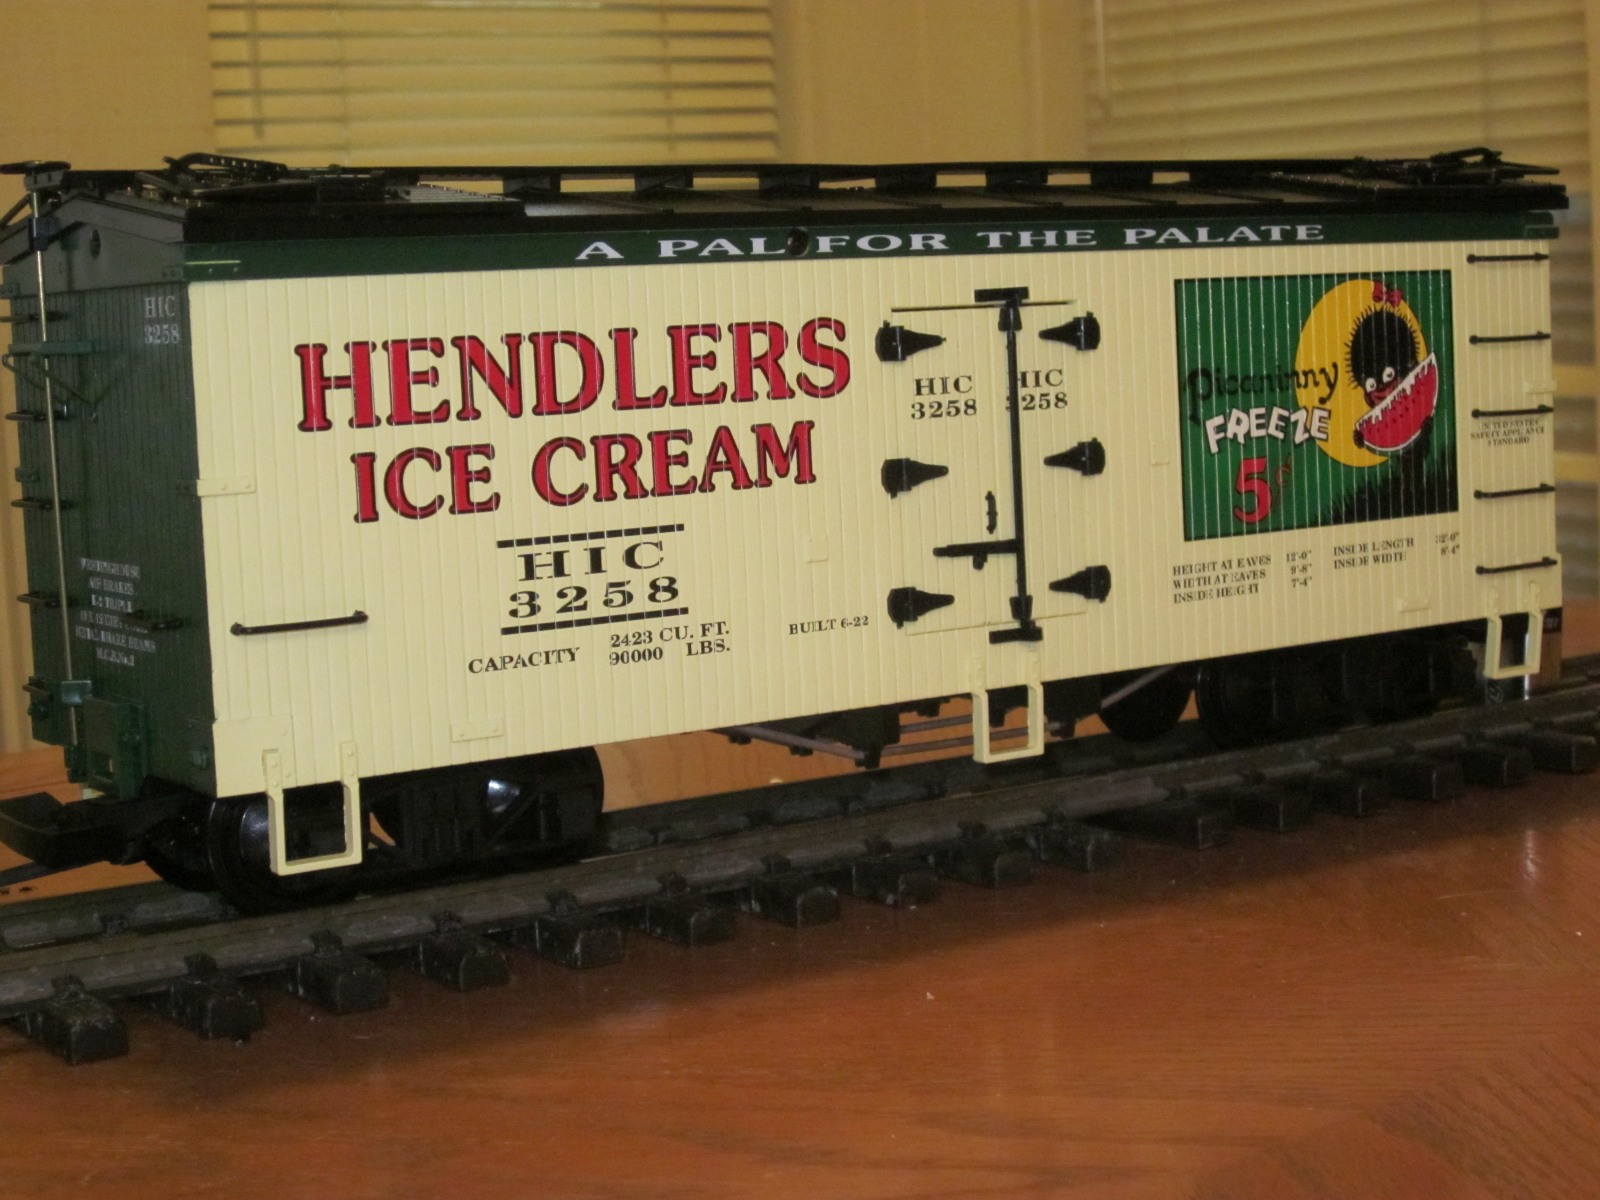 R16232 Hendlers Ice Cream HIC 3258